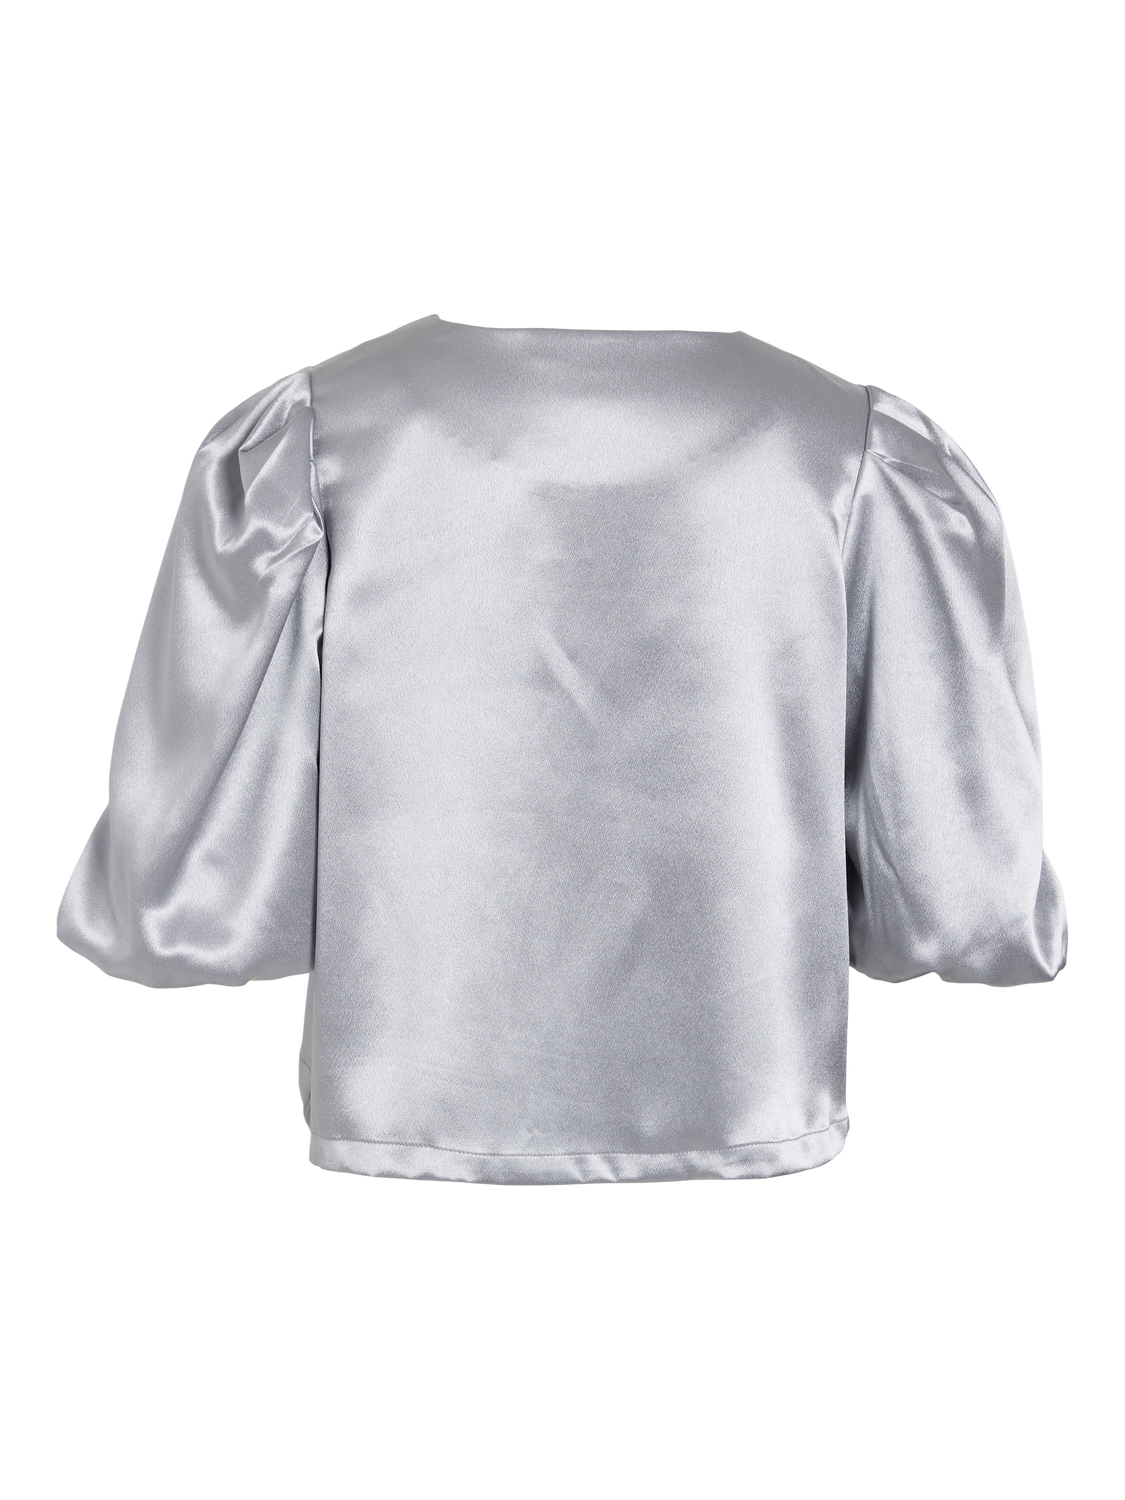 VISHINA T-Shirts & Tops - Silver